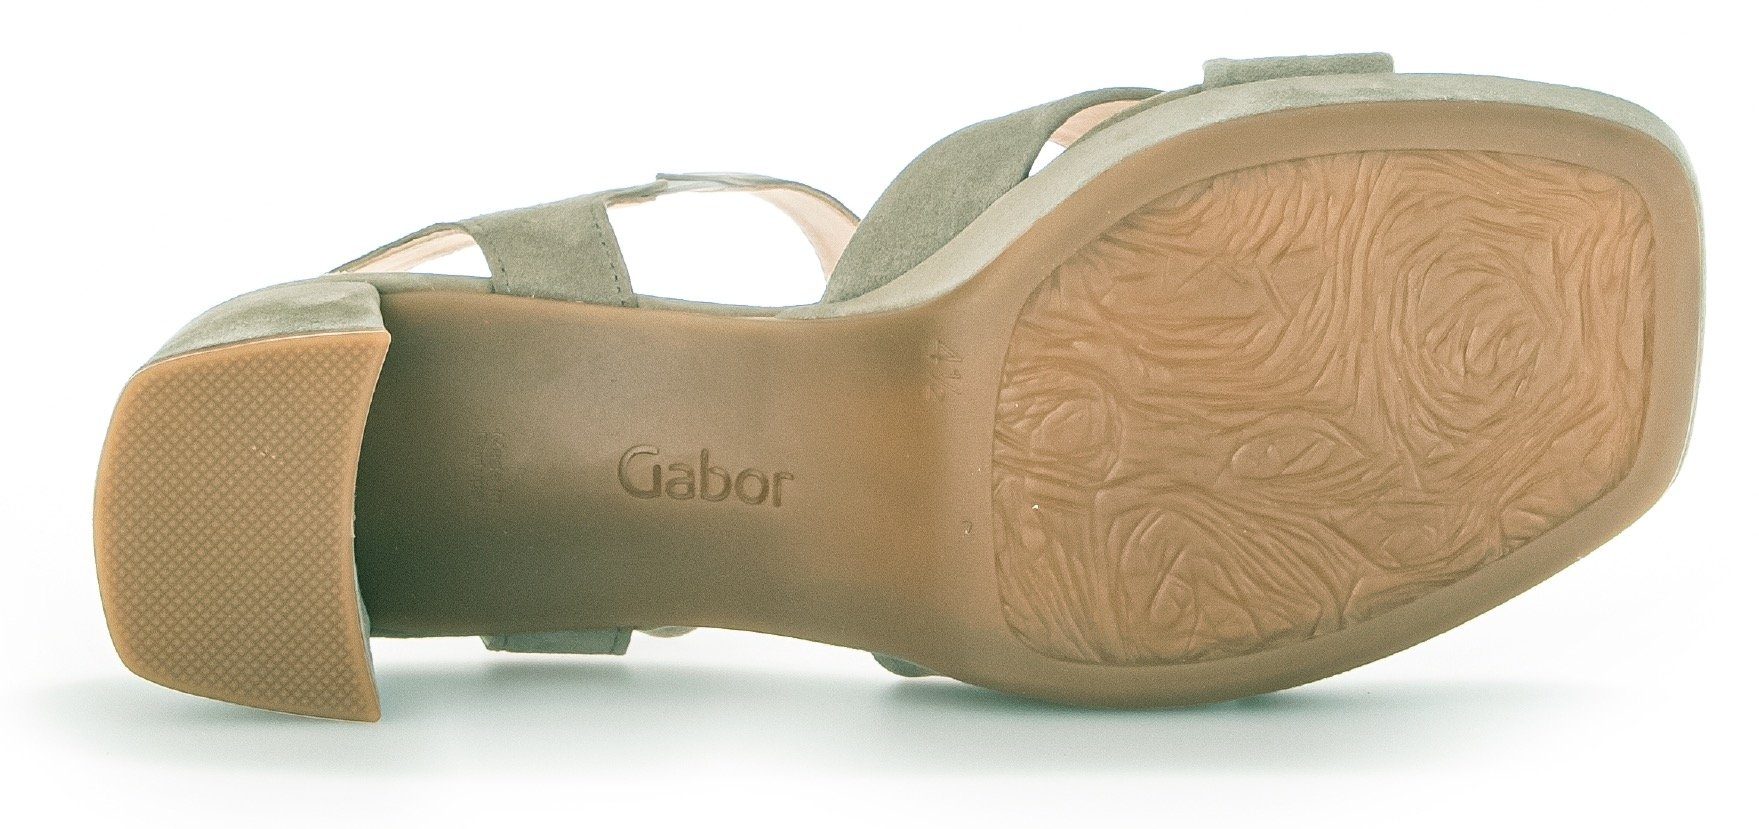 G Weite Gabor mit Kreuzbandage, hellgrün Sandalette